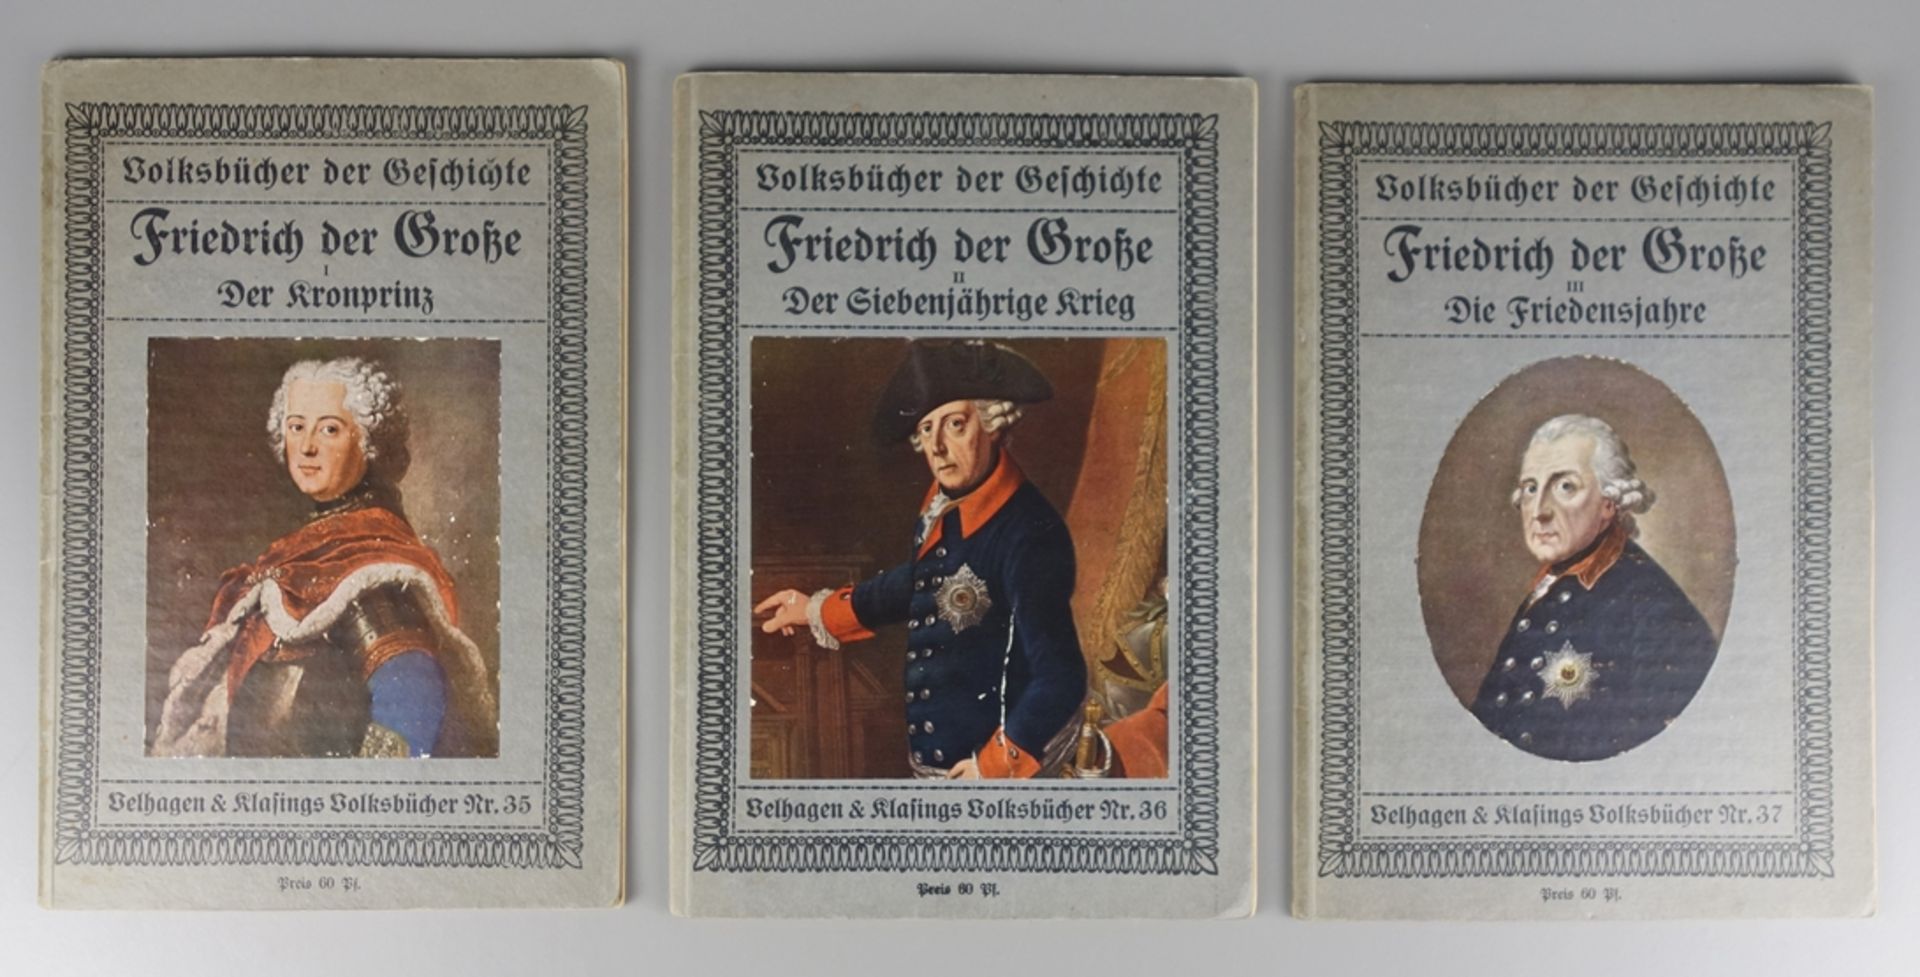 3 Volksbücher der Geschichte, Friedrich der Große, 1912, Velhagen&Klasings Volk